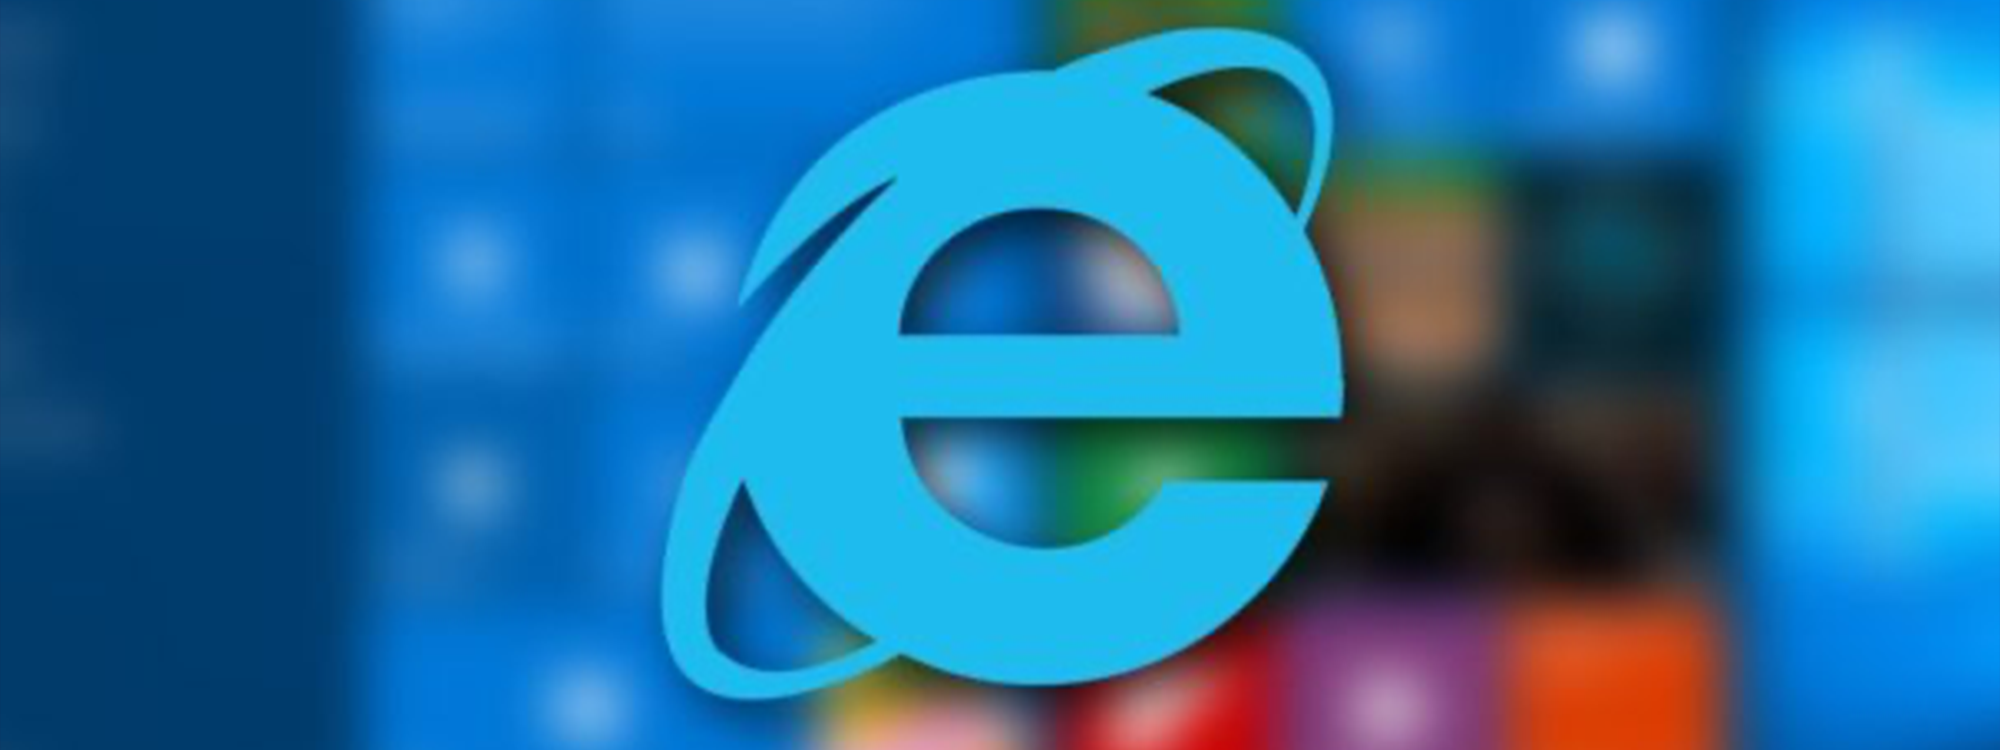 Microsoft Pone Fin A Internet Explorer Después De 27 Años De Servicio